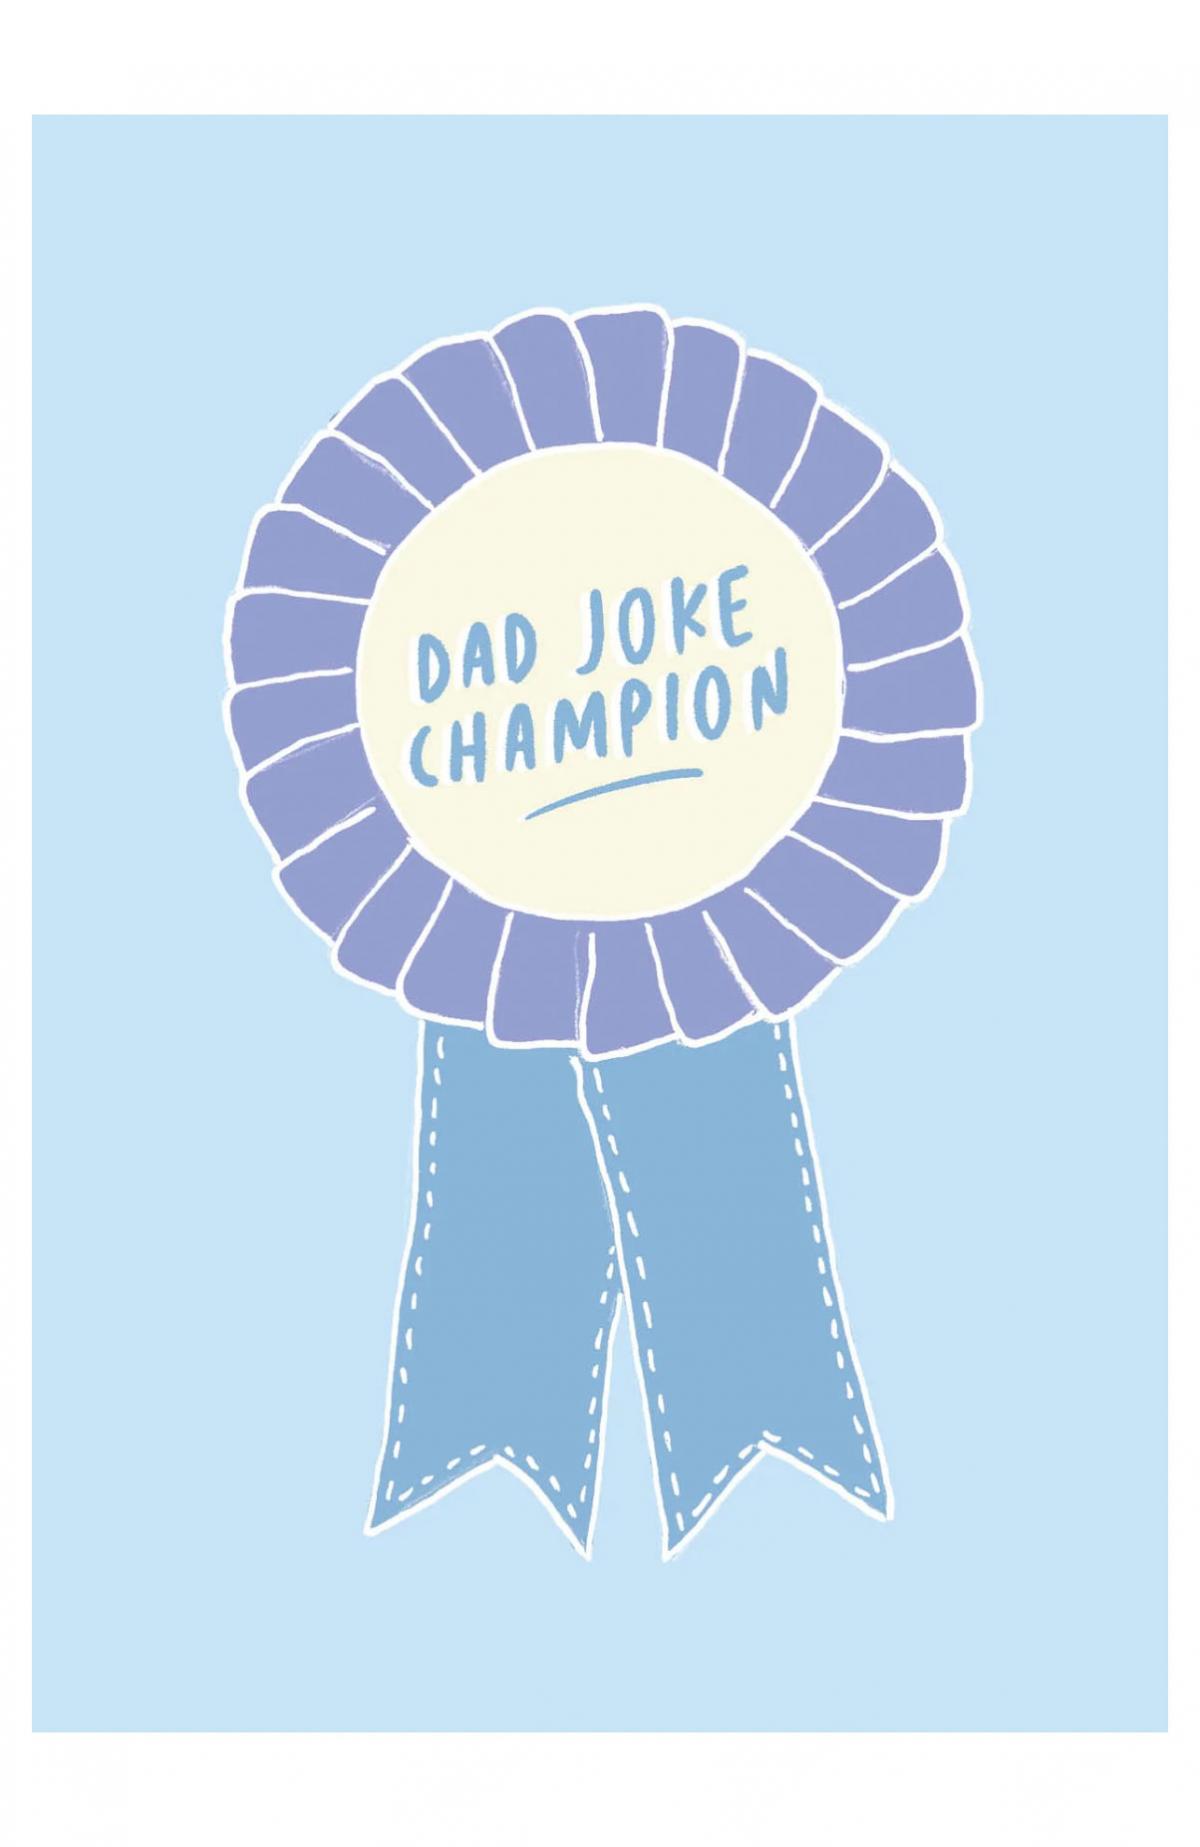 Dad joke champion 